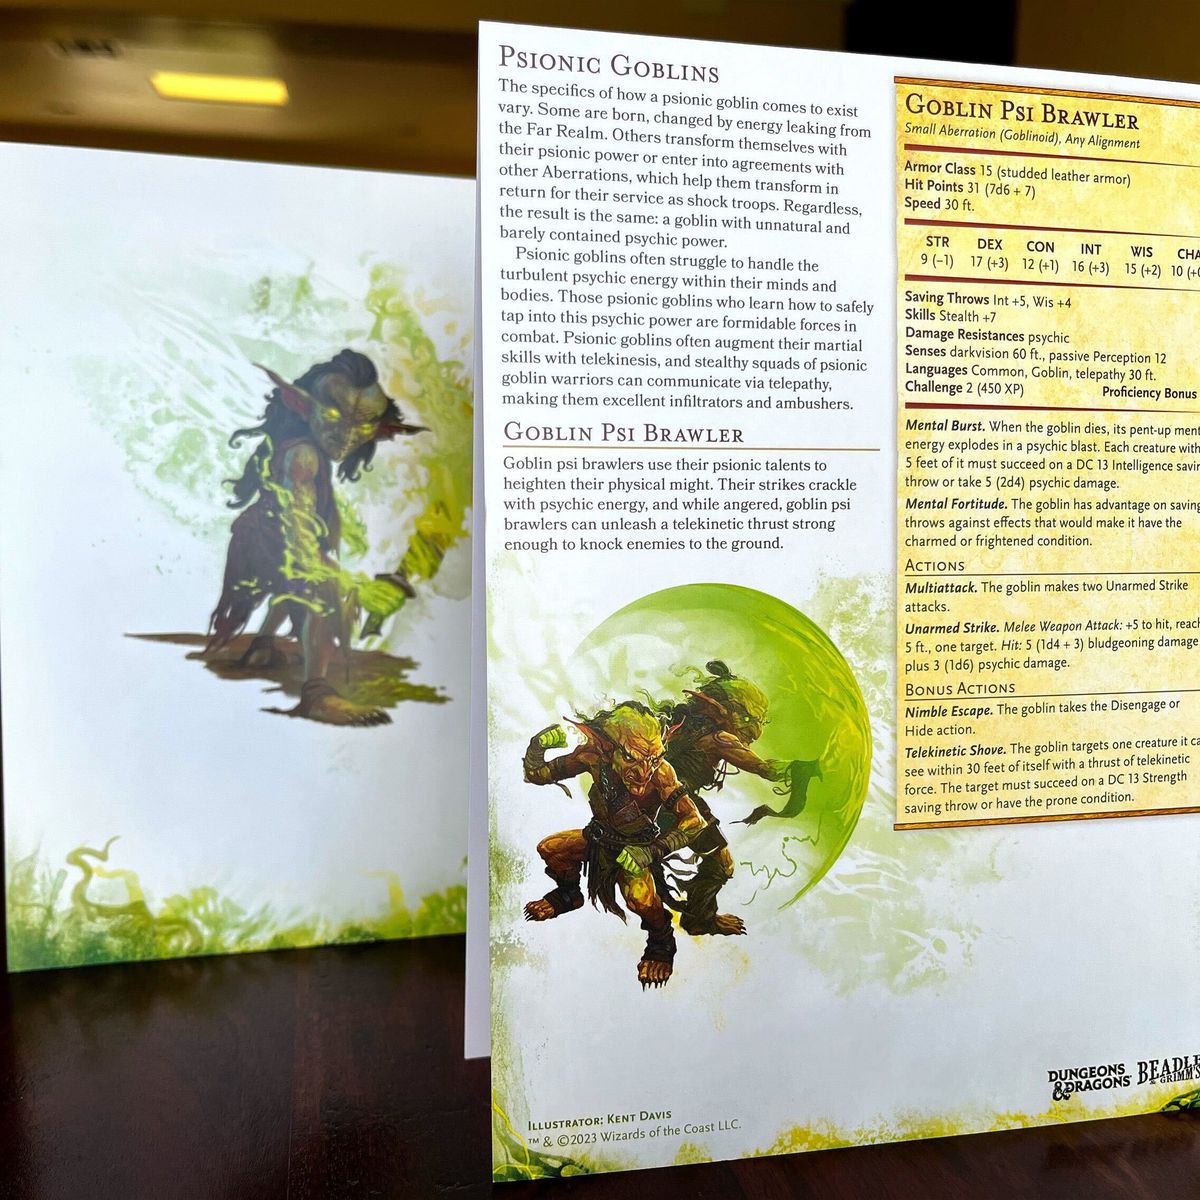 En utskrift av statistiska block för Psionic Goblins och Goblin Psi Brawlers sitter framför konstverk av en grön goblin som använder ett flammande svärd